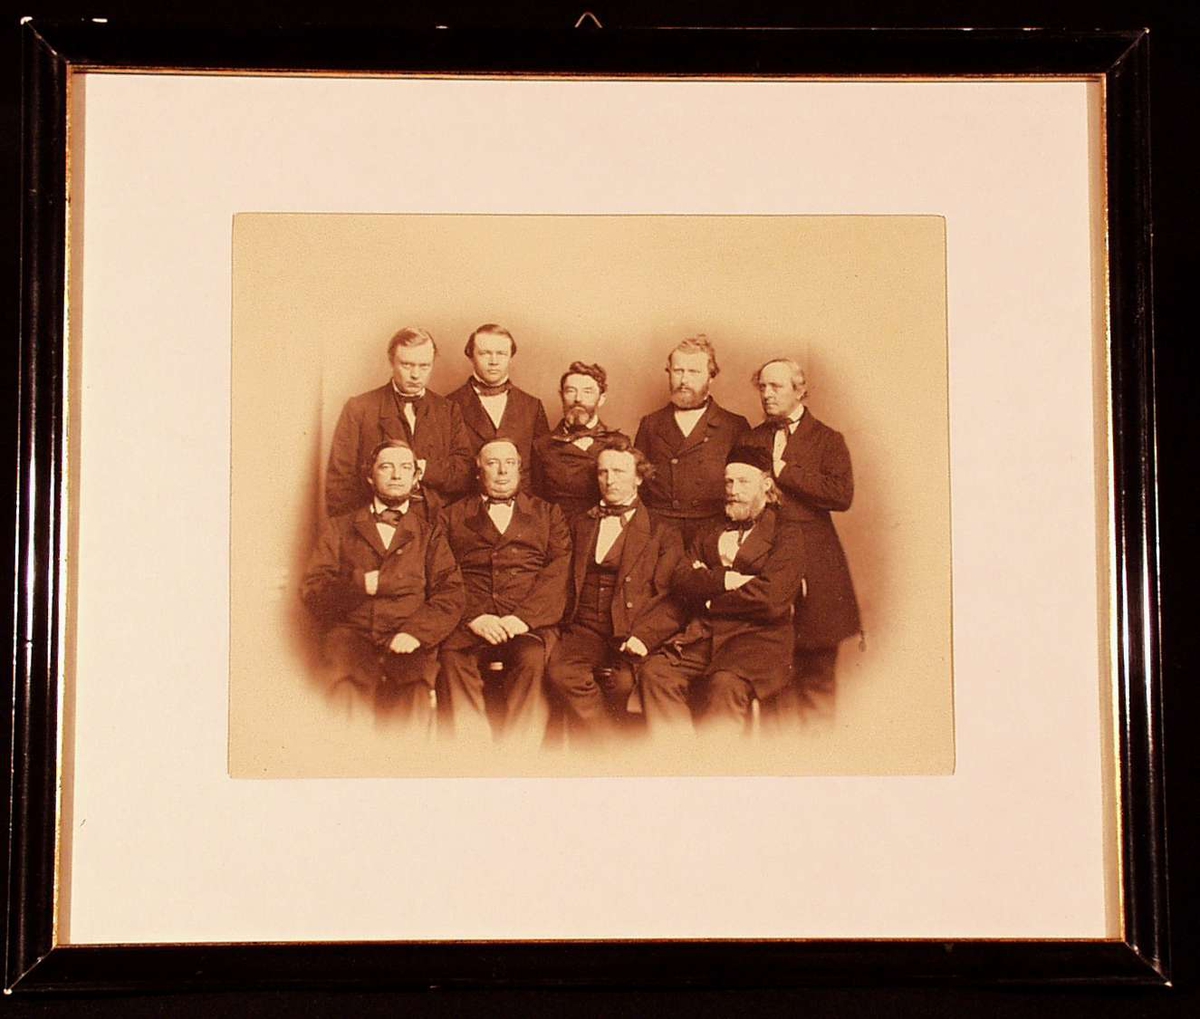 Gruppebilde av stortingsmenn, Kristiania, 22 mai 1863. Nederste rekke fra venstre: Sverdrup, Blom, Essendrop, Danielsen.  
Stående fra venstre: Daae, Richter, Johan Sverdrup, Steen, Krognes. 